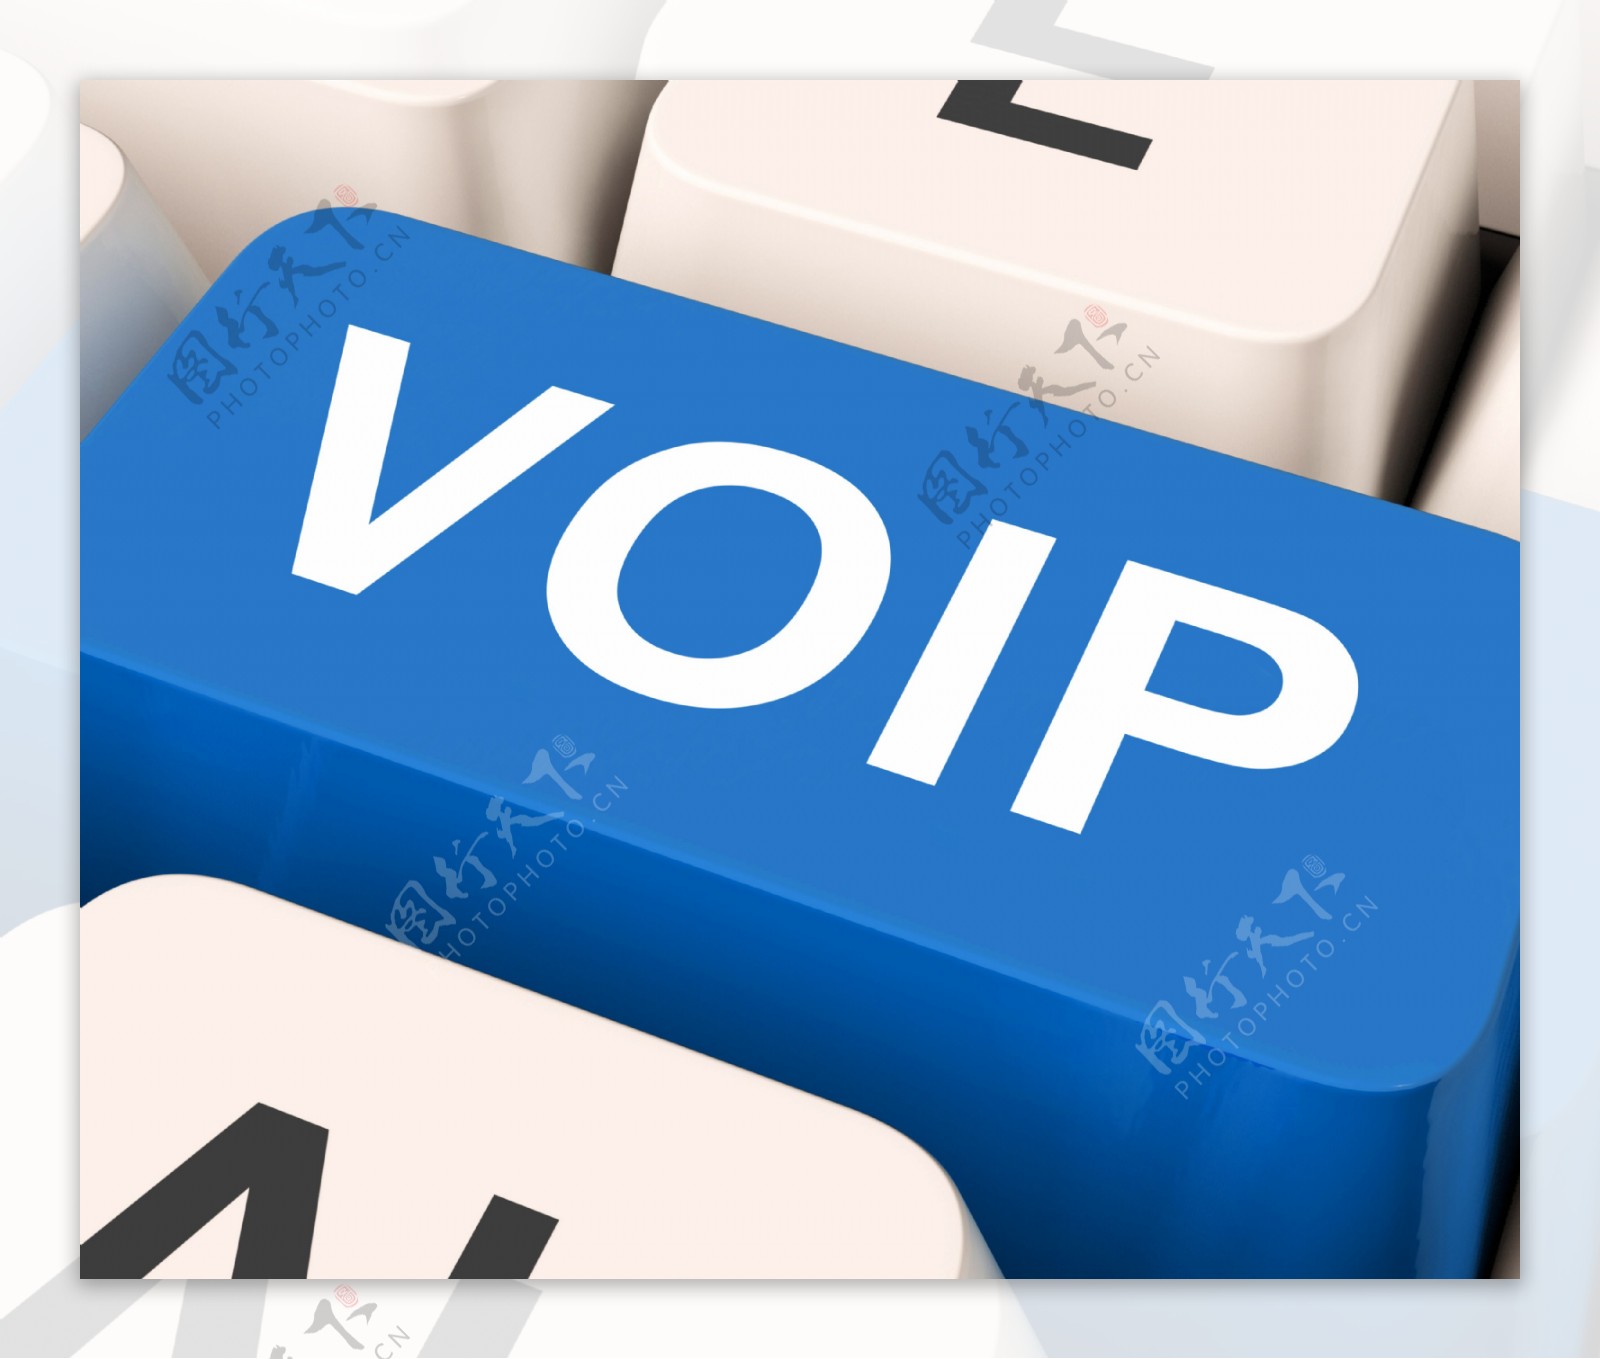 VoIP的关键手段互联网语音协议